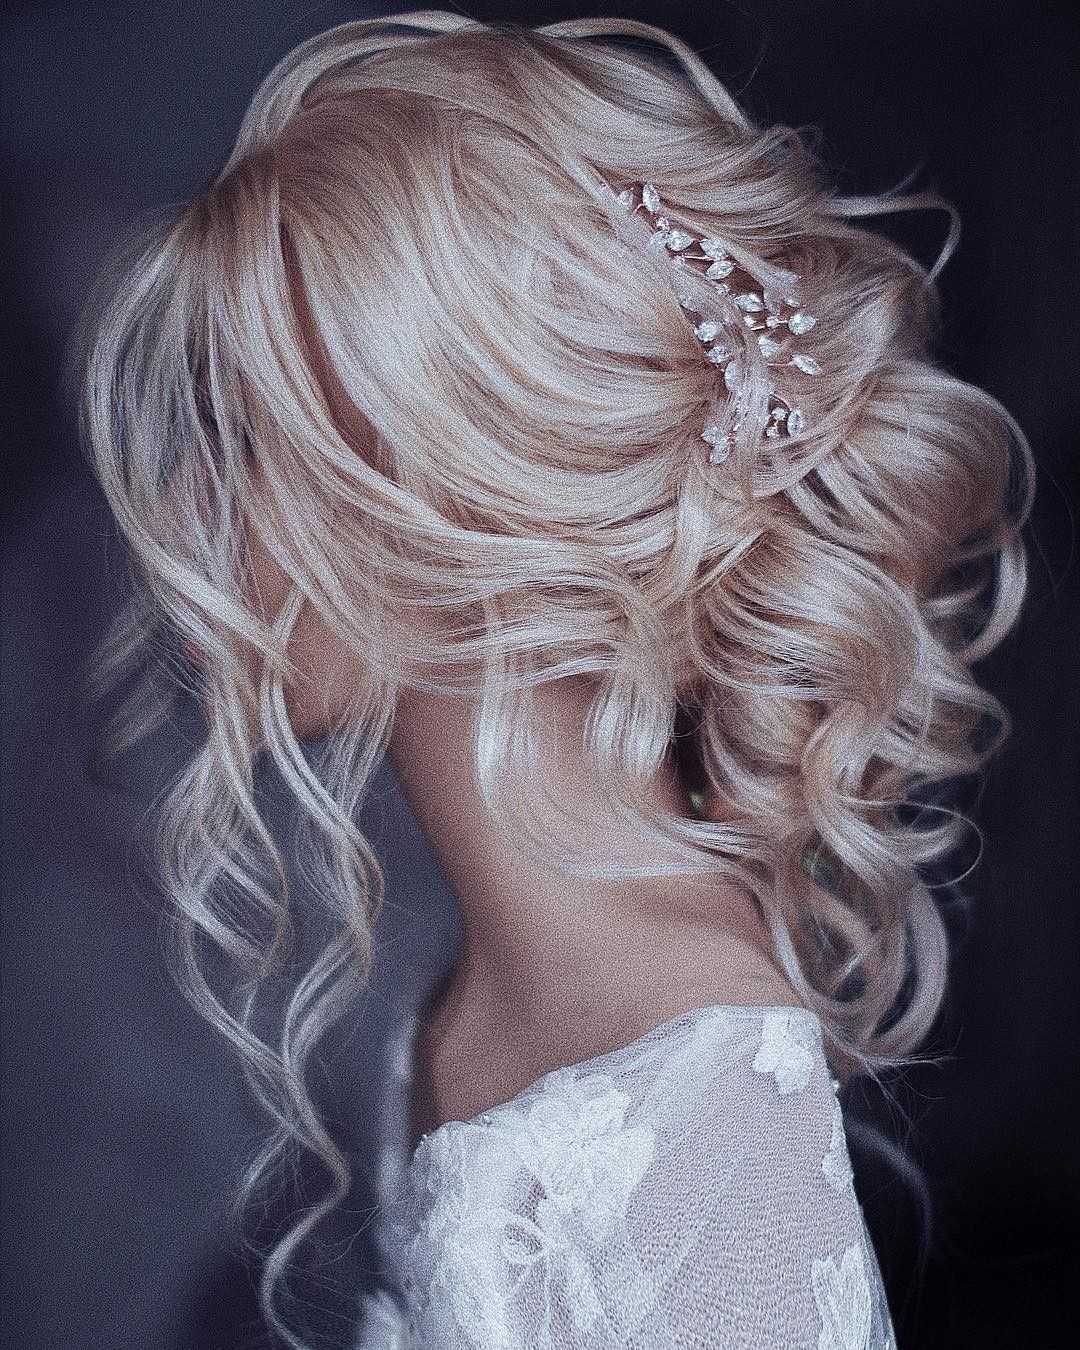 Нежные свадебные прически для брюнеток, блондинок, щатенок или рыжих Прически невесте на свадьбу на темные, черные, светлые волосы Красивые образы на роспись в ЗАГСе на мелированные волосы